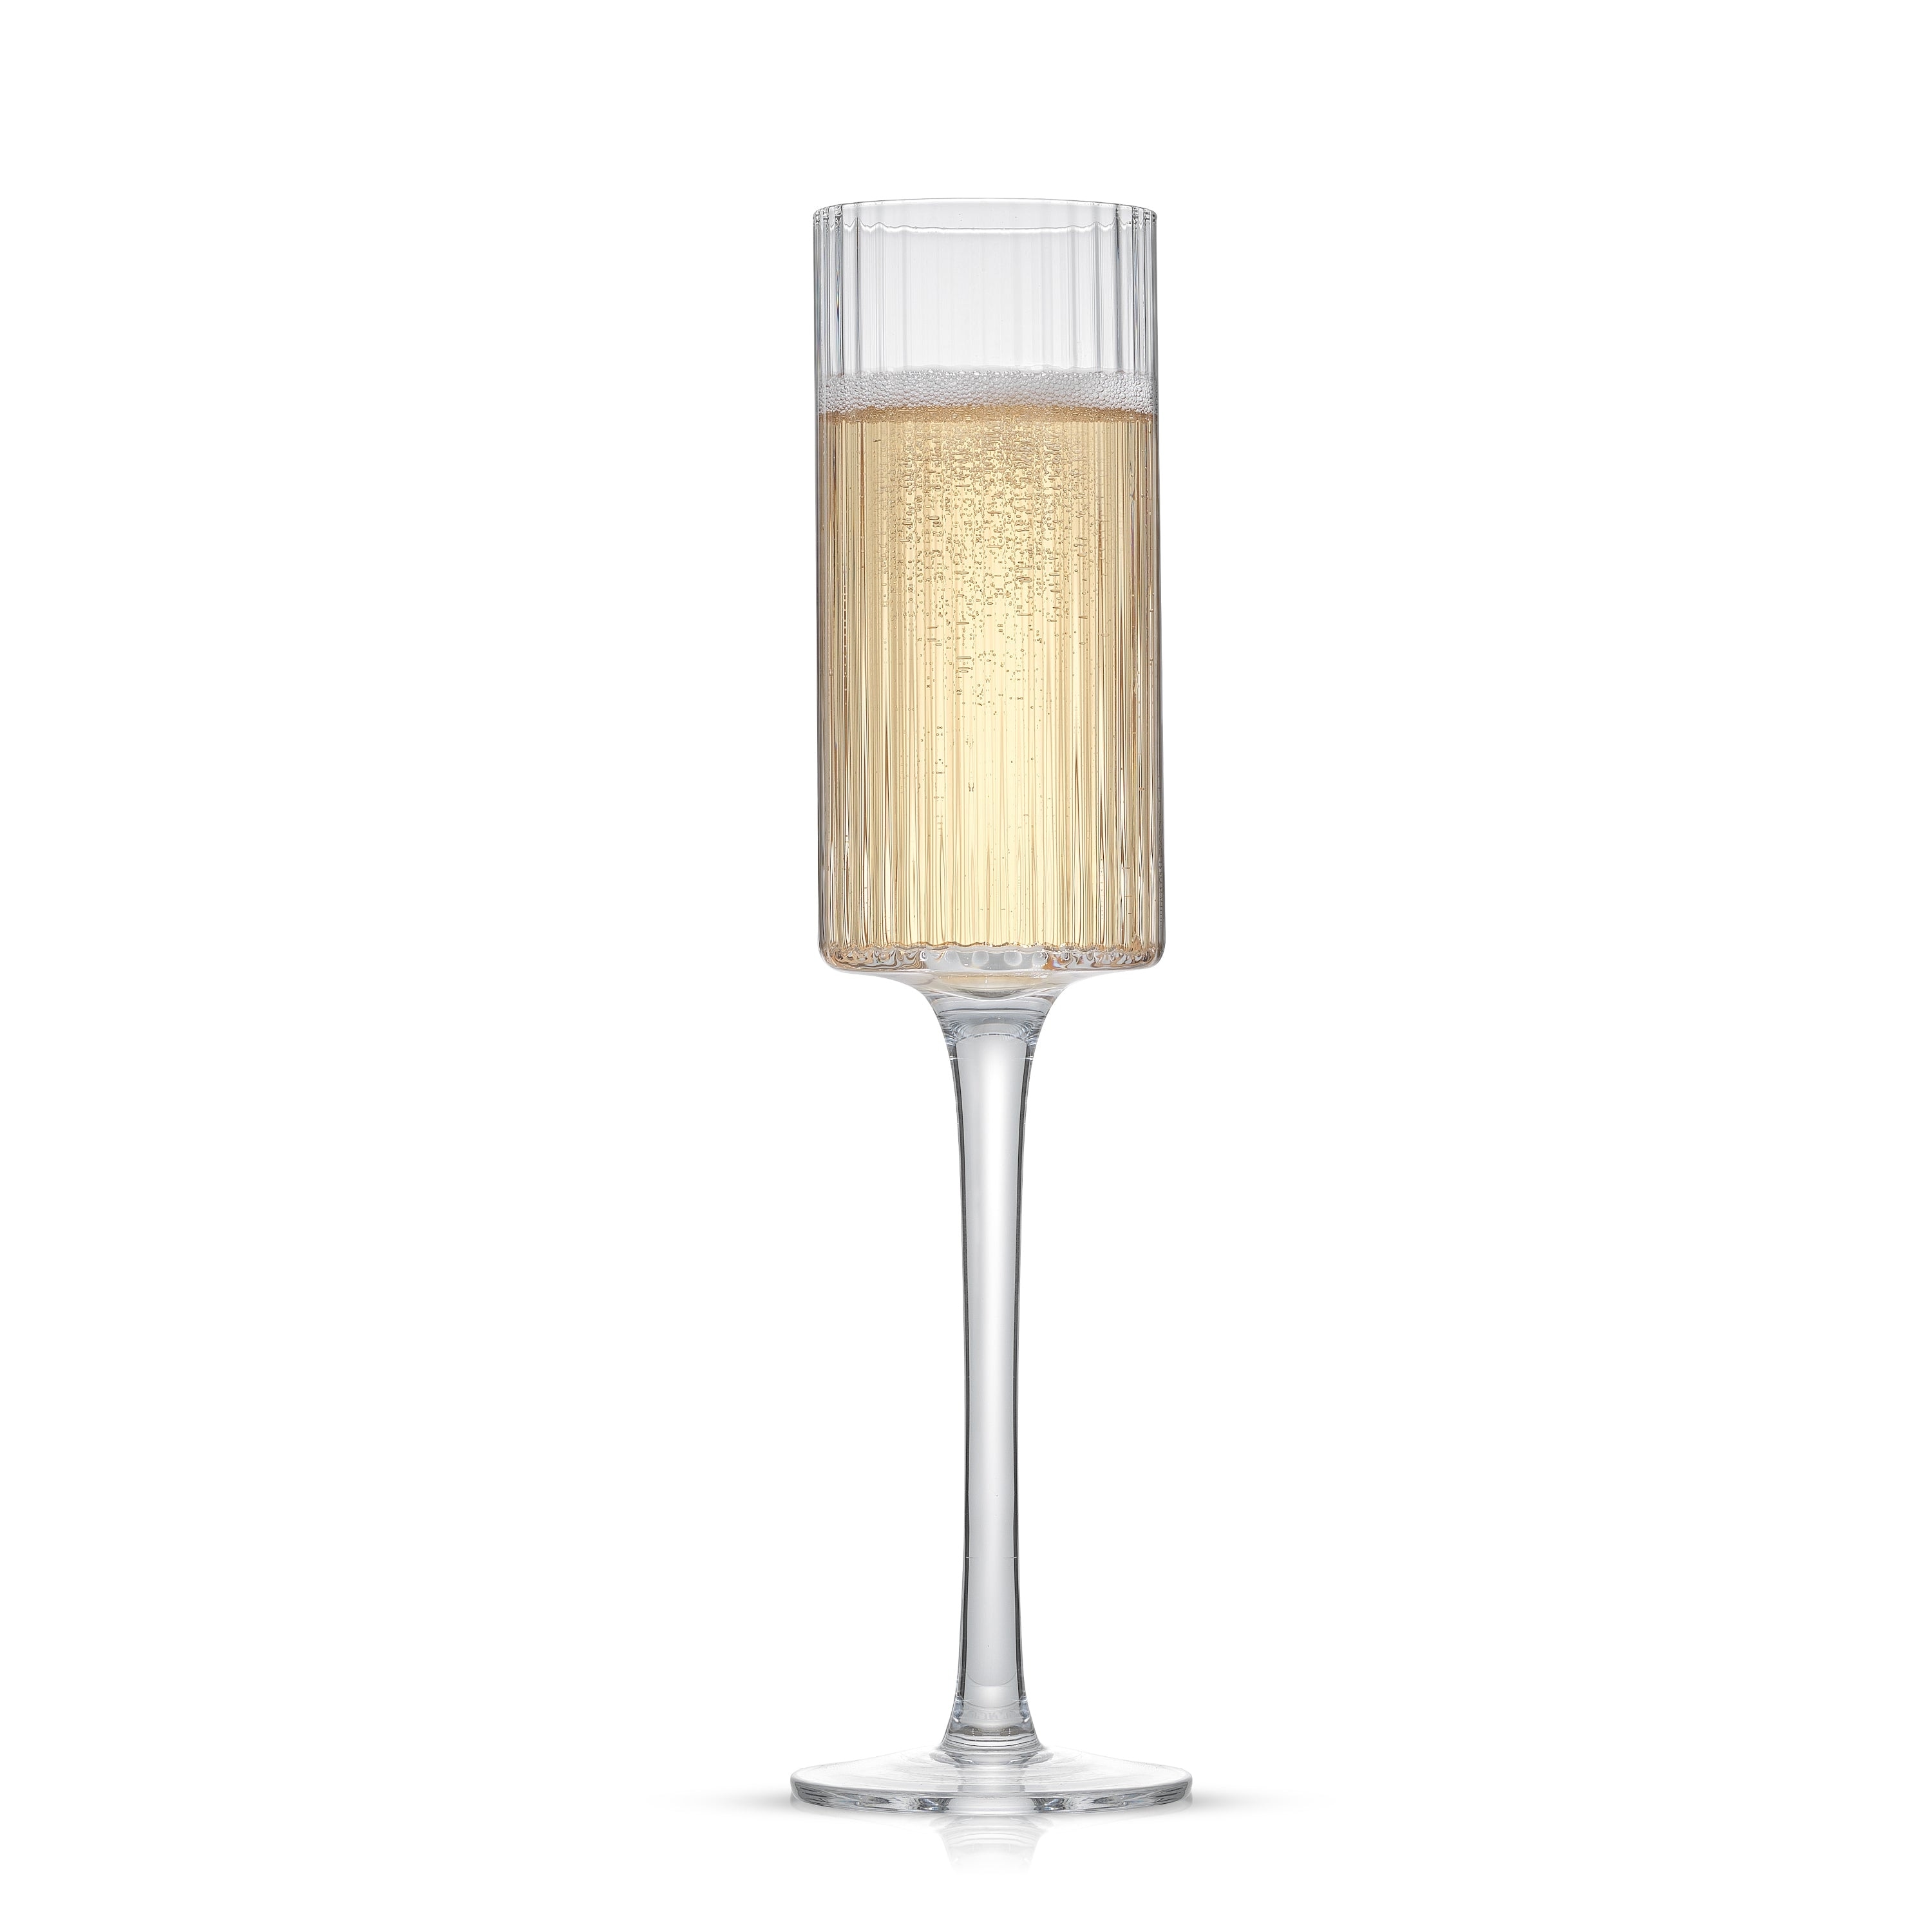 JoyJolt Black Swan Crystal Stemmed Champagne Glasses Set 7.3 oz